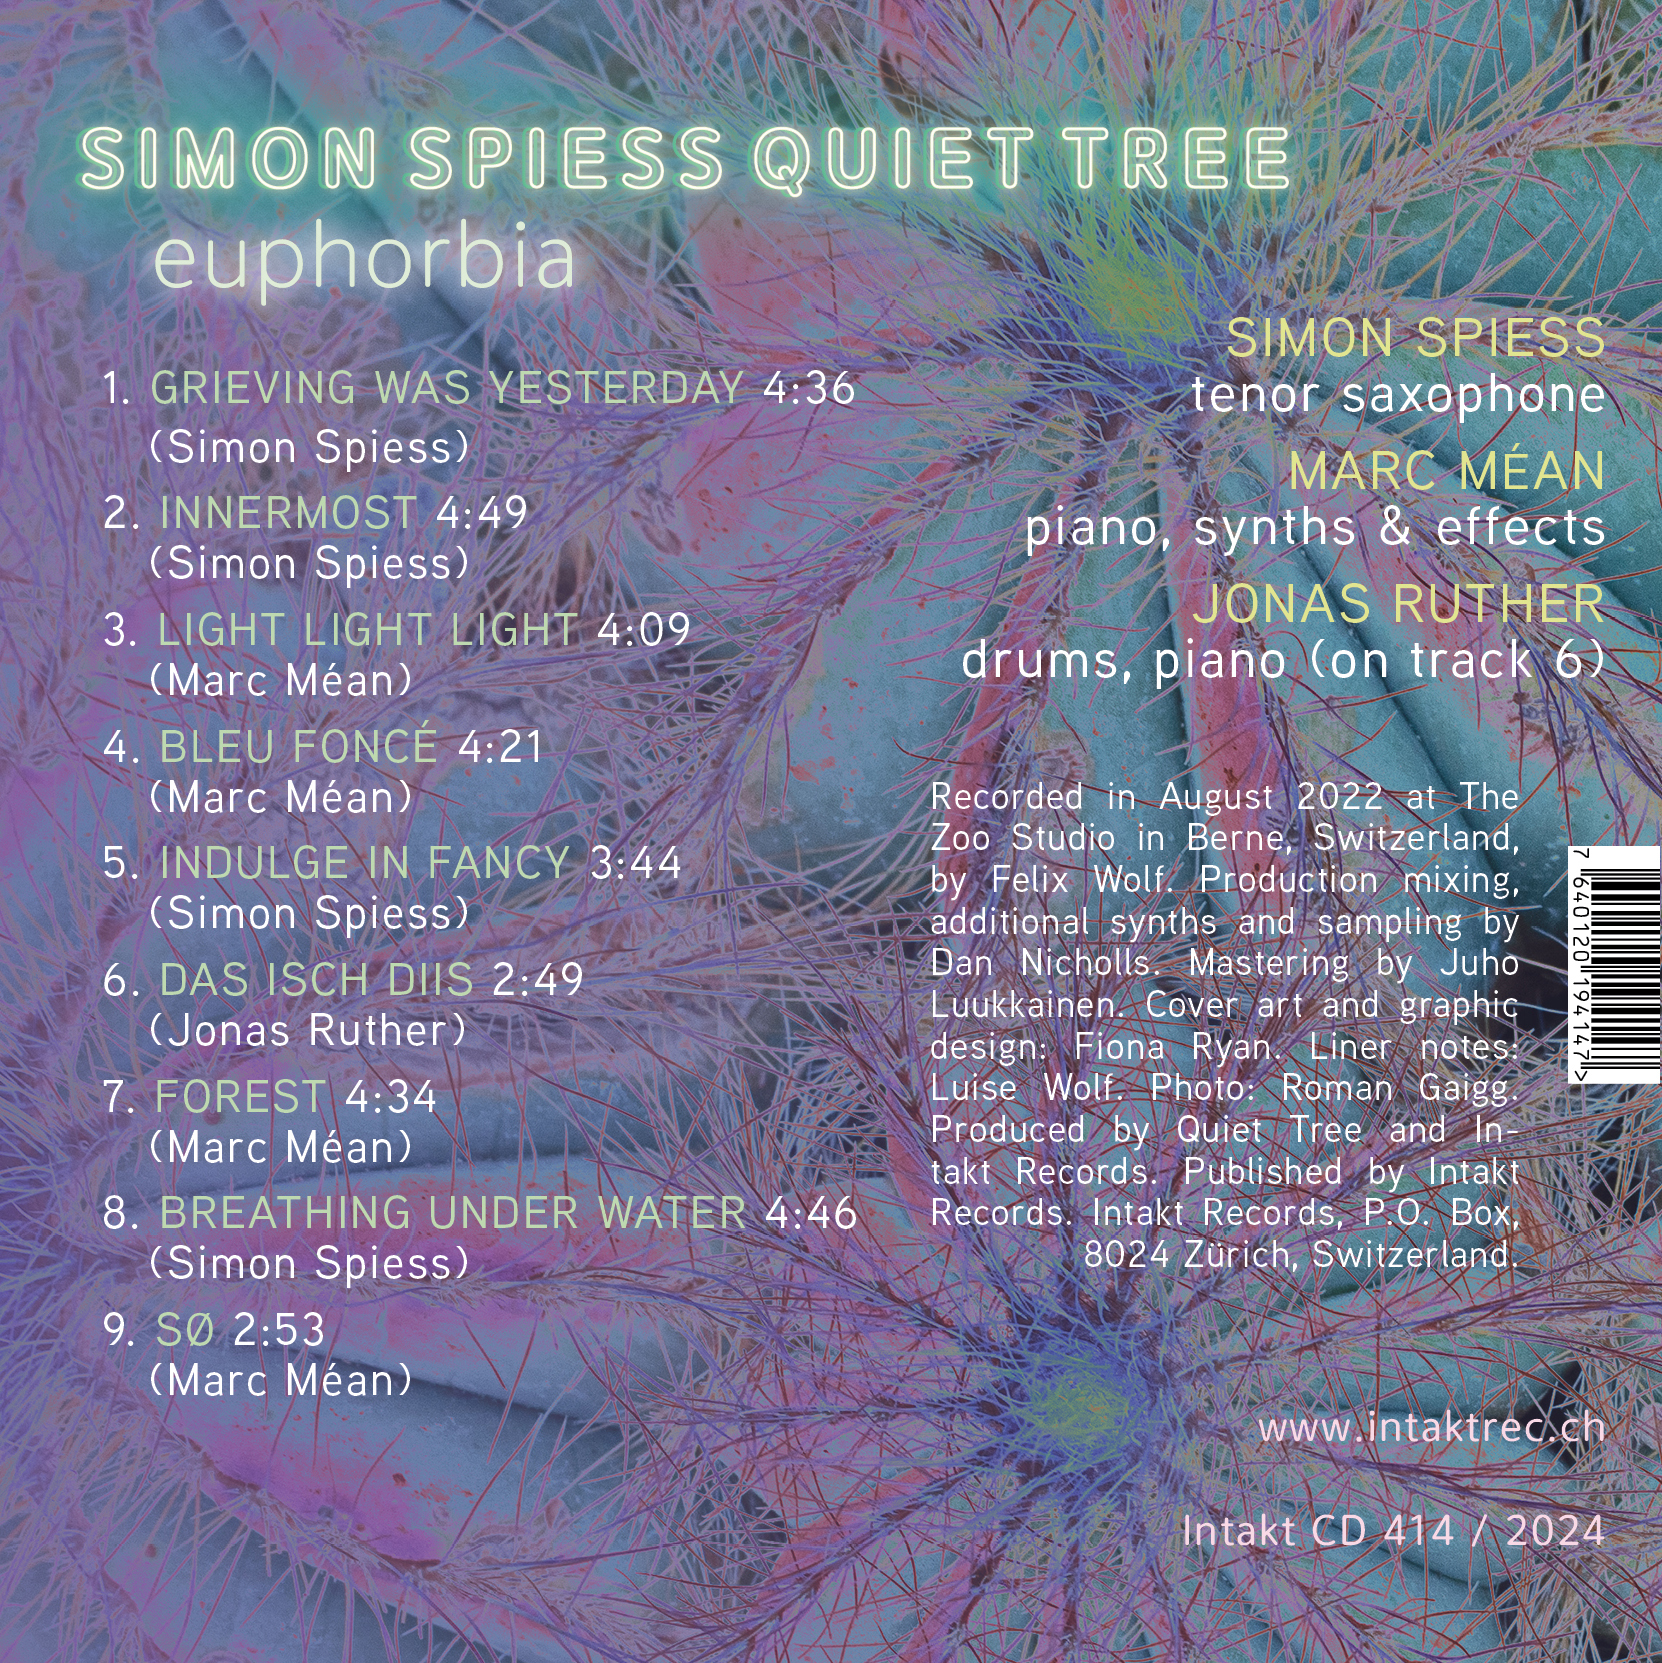 SIMON SPIESS QUIET TREE
EUPHORBIA cover back intakt records